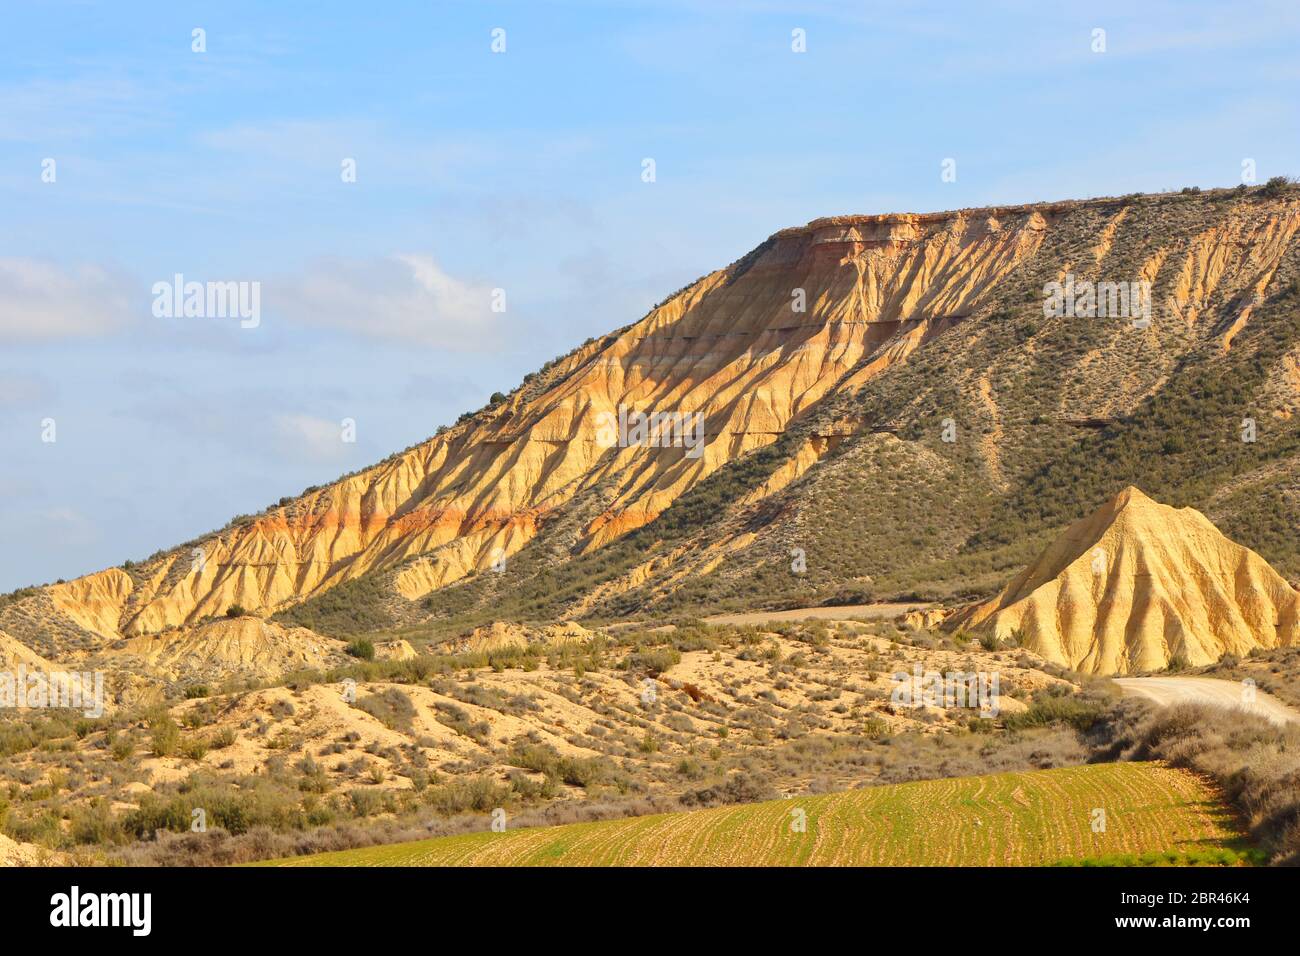 Fascinantes formas terrestres y elementos erosionales en la región natural semi-desértica Bardenas reales, Reserva de la Biosfera de la UNESCO, Navarra, España Foto de stock